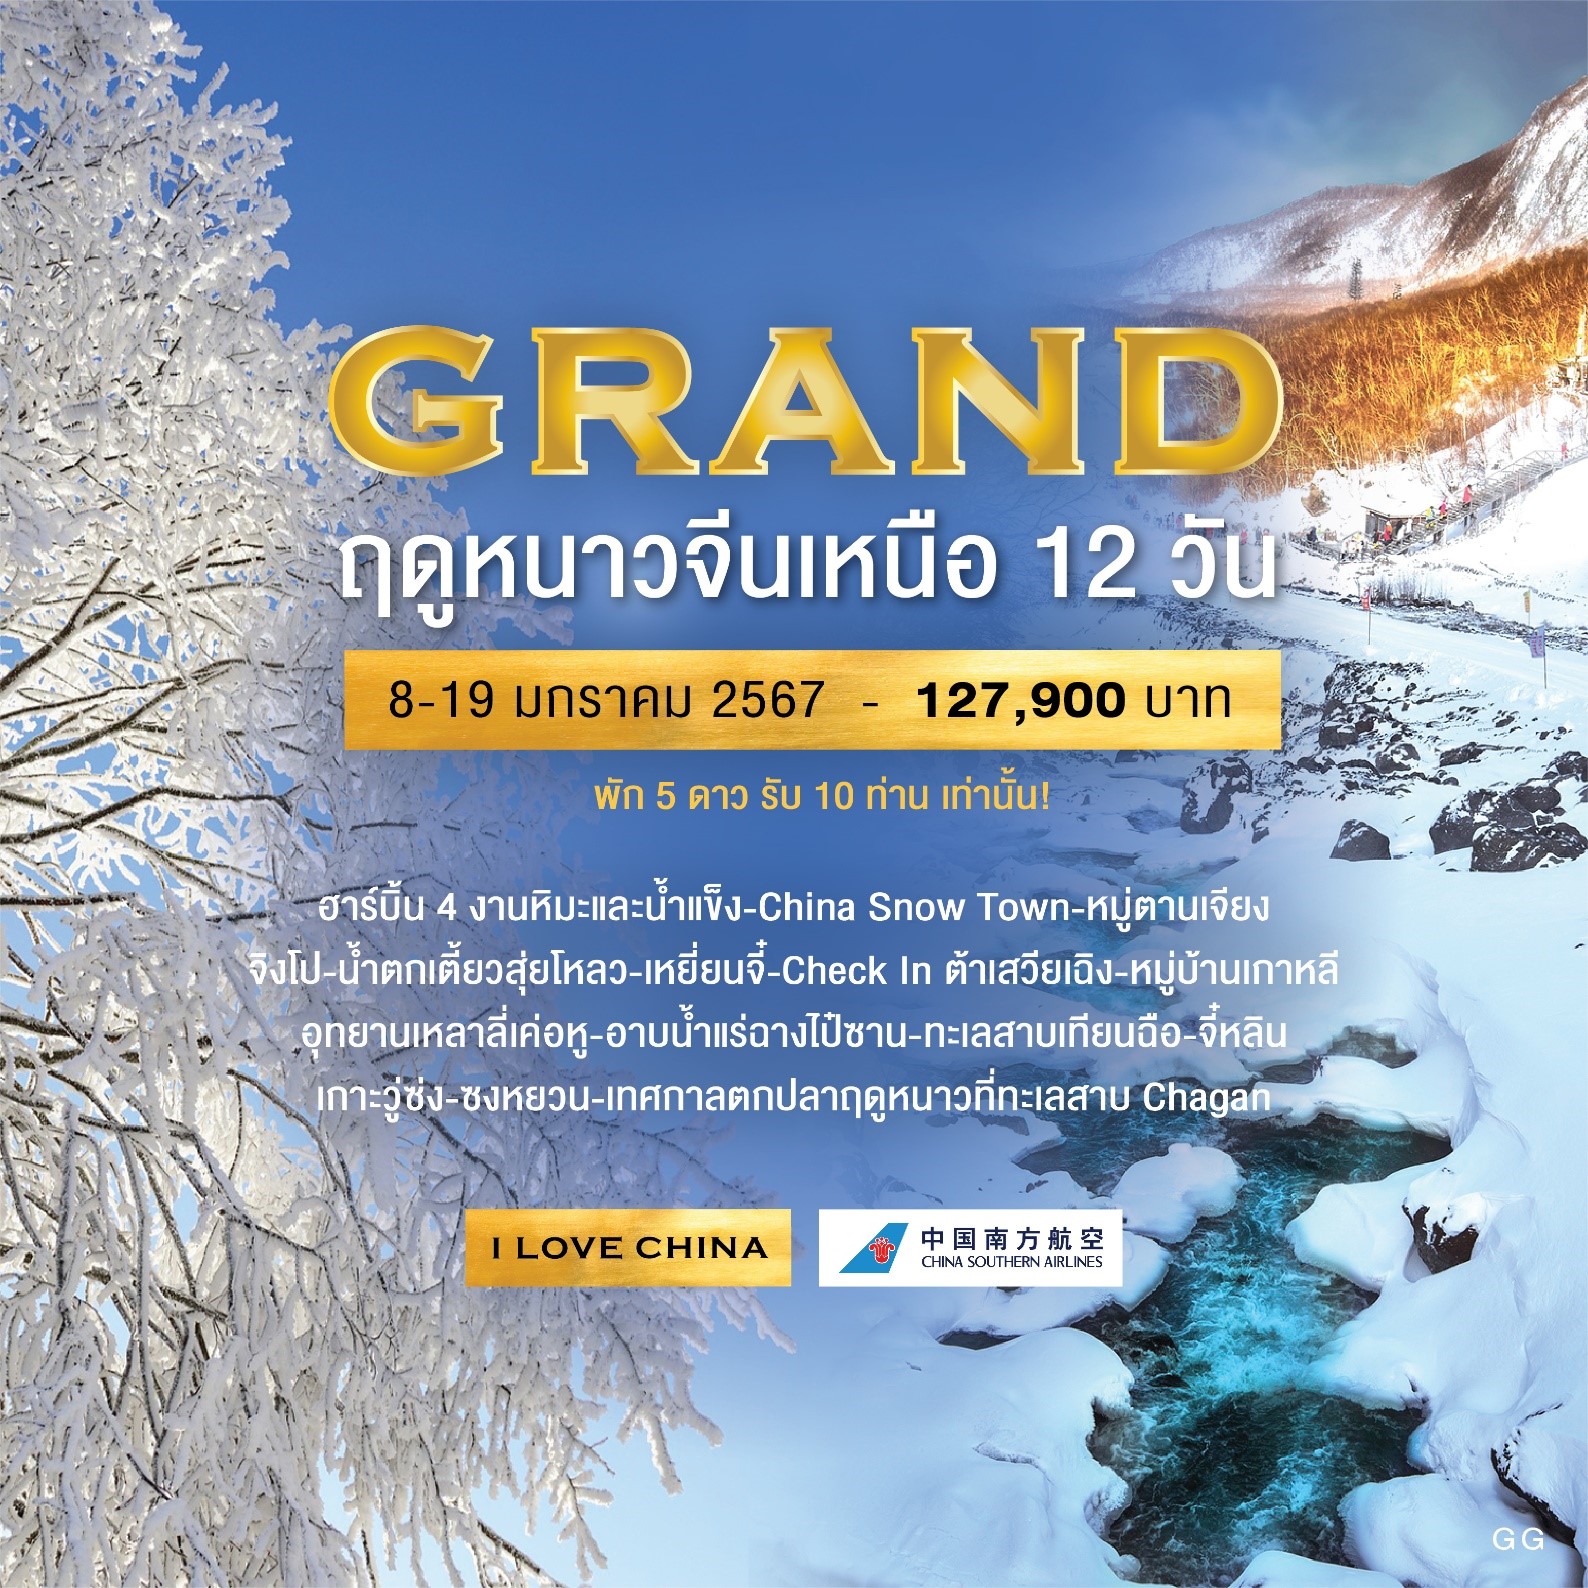 ทัวร์จีน Exclusive ทัวร์ฮาร์บิ้น Snow Grand พักหรู 5 ดาว วีไอพีตลอดทริป  12วัน 11คืน